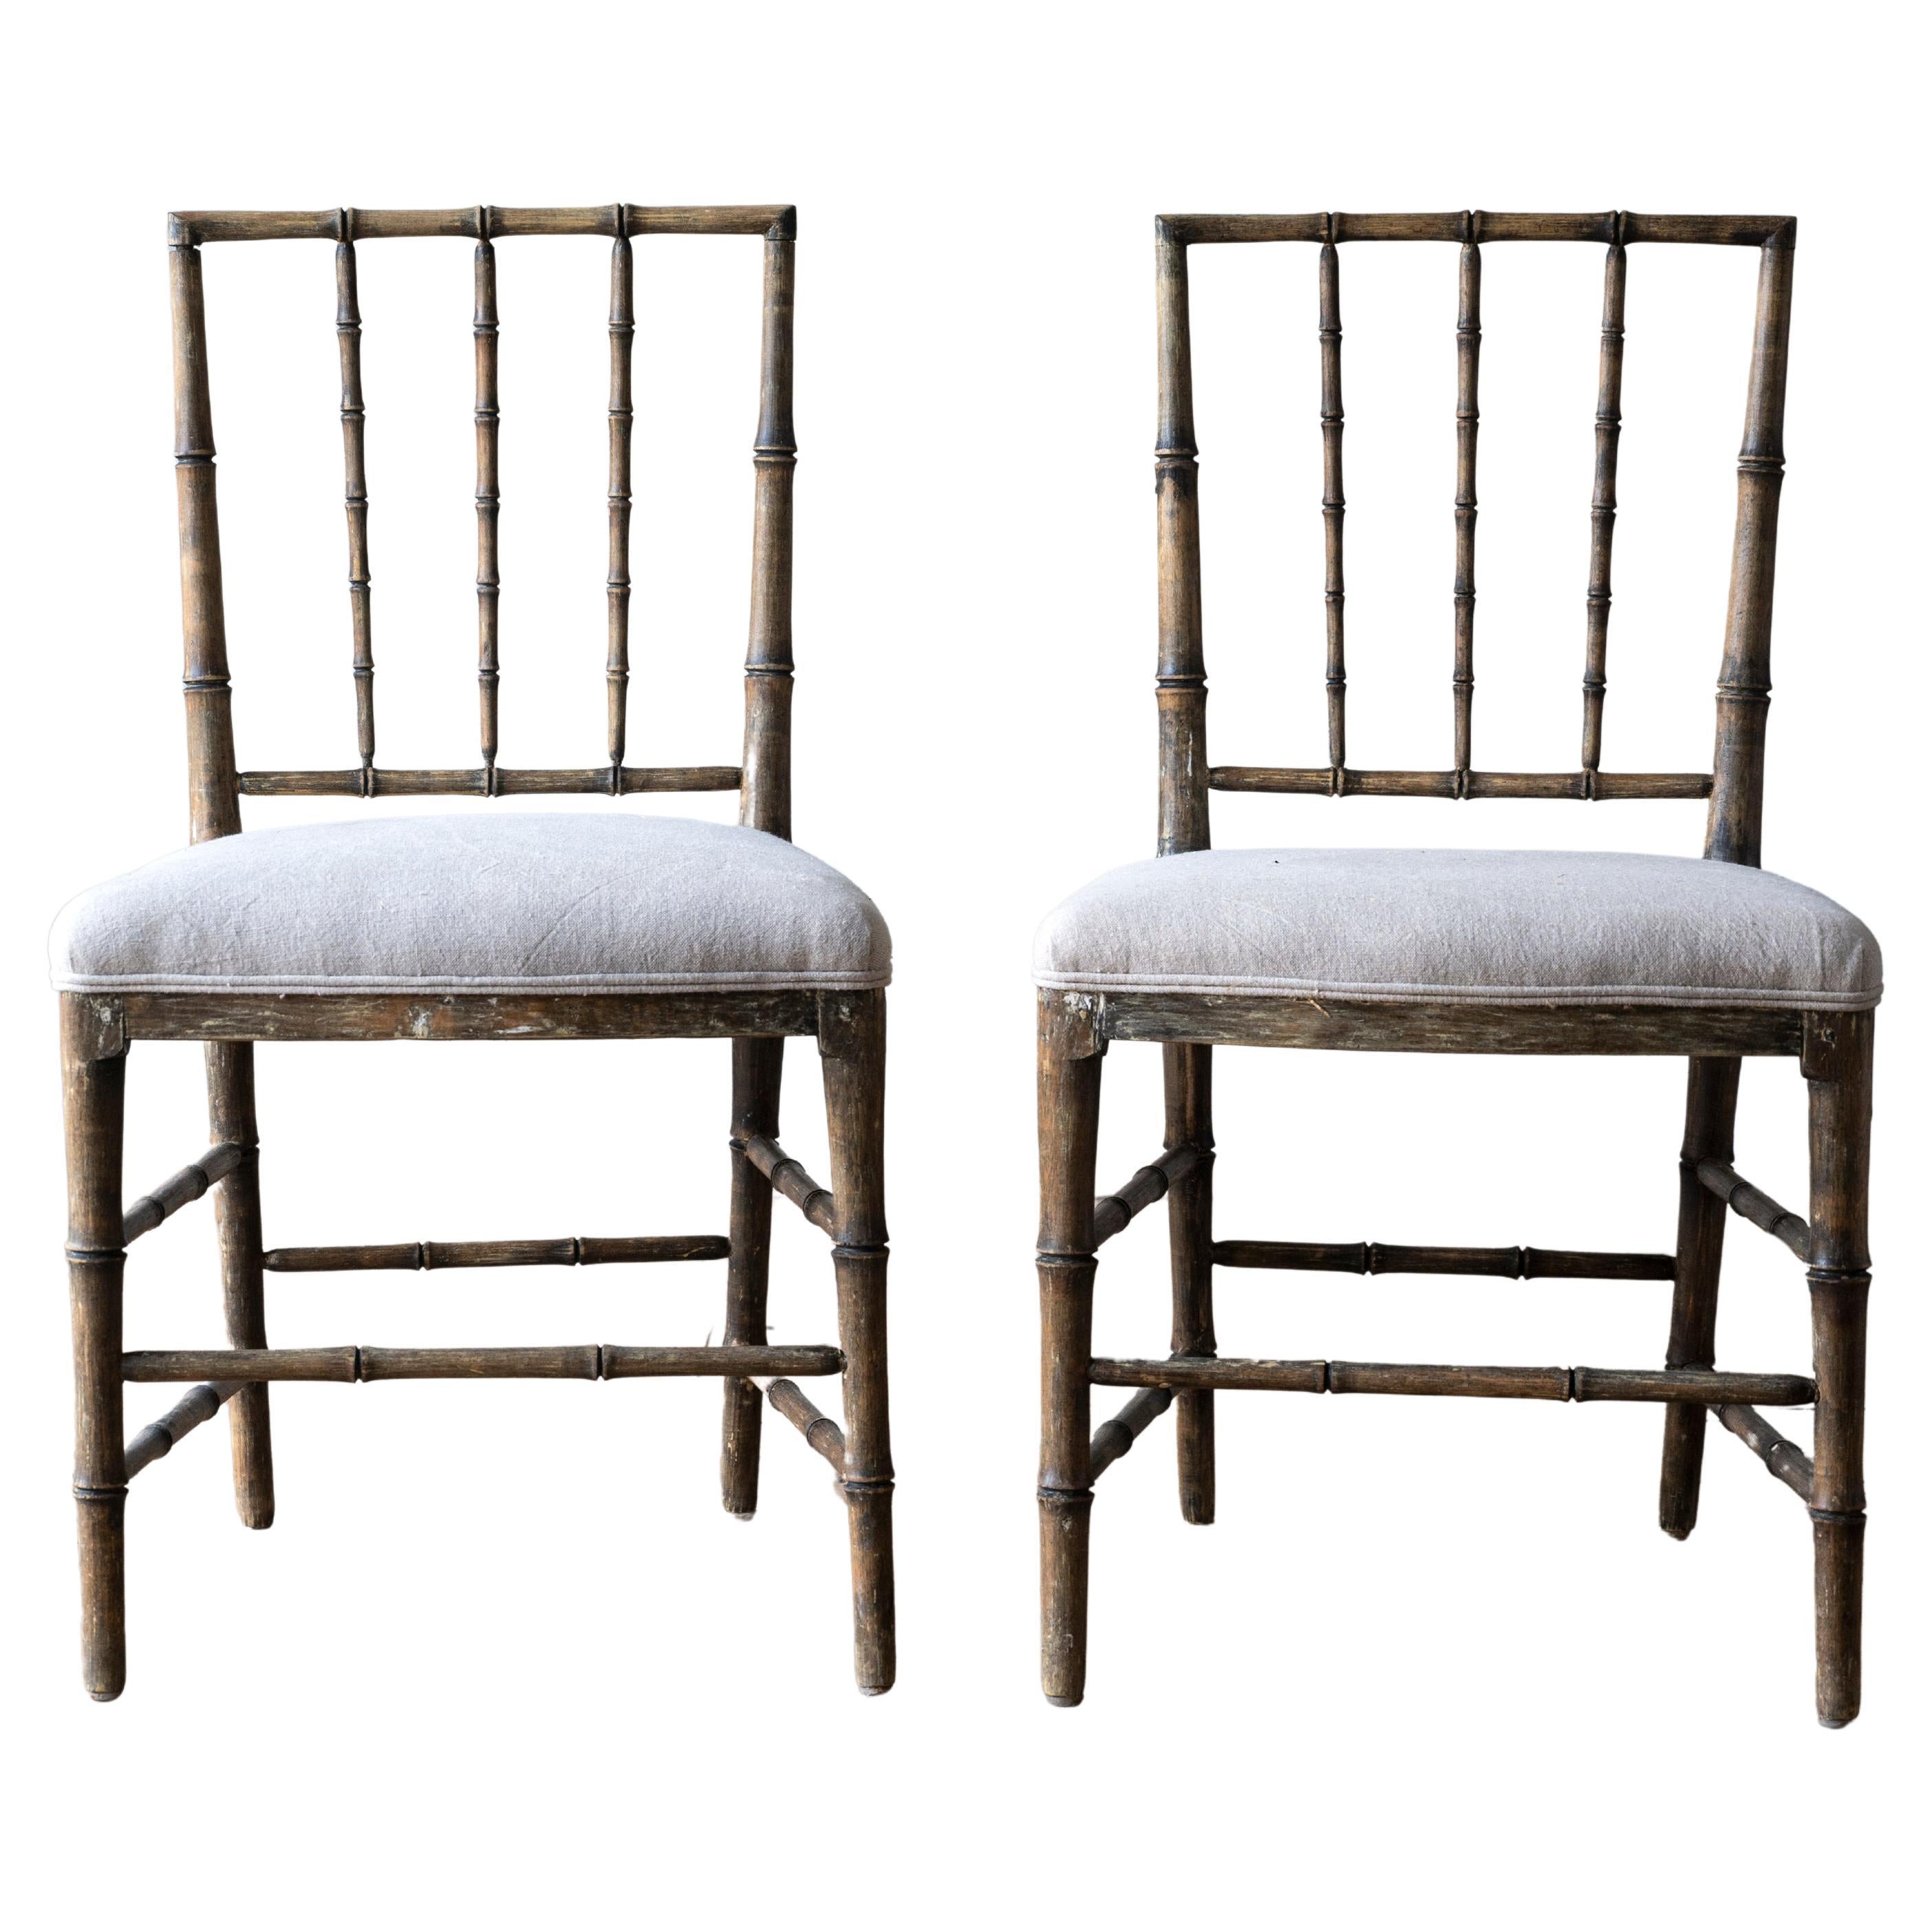 Rare paire de chaises gustaviennes du 19ème siècle en faux bambou